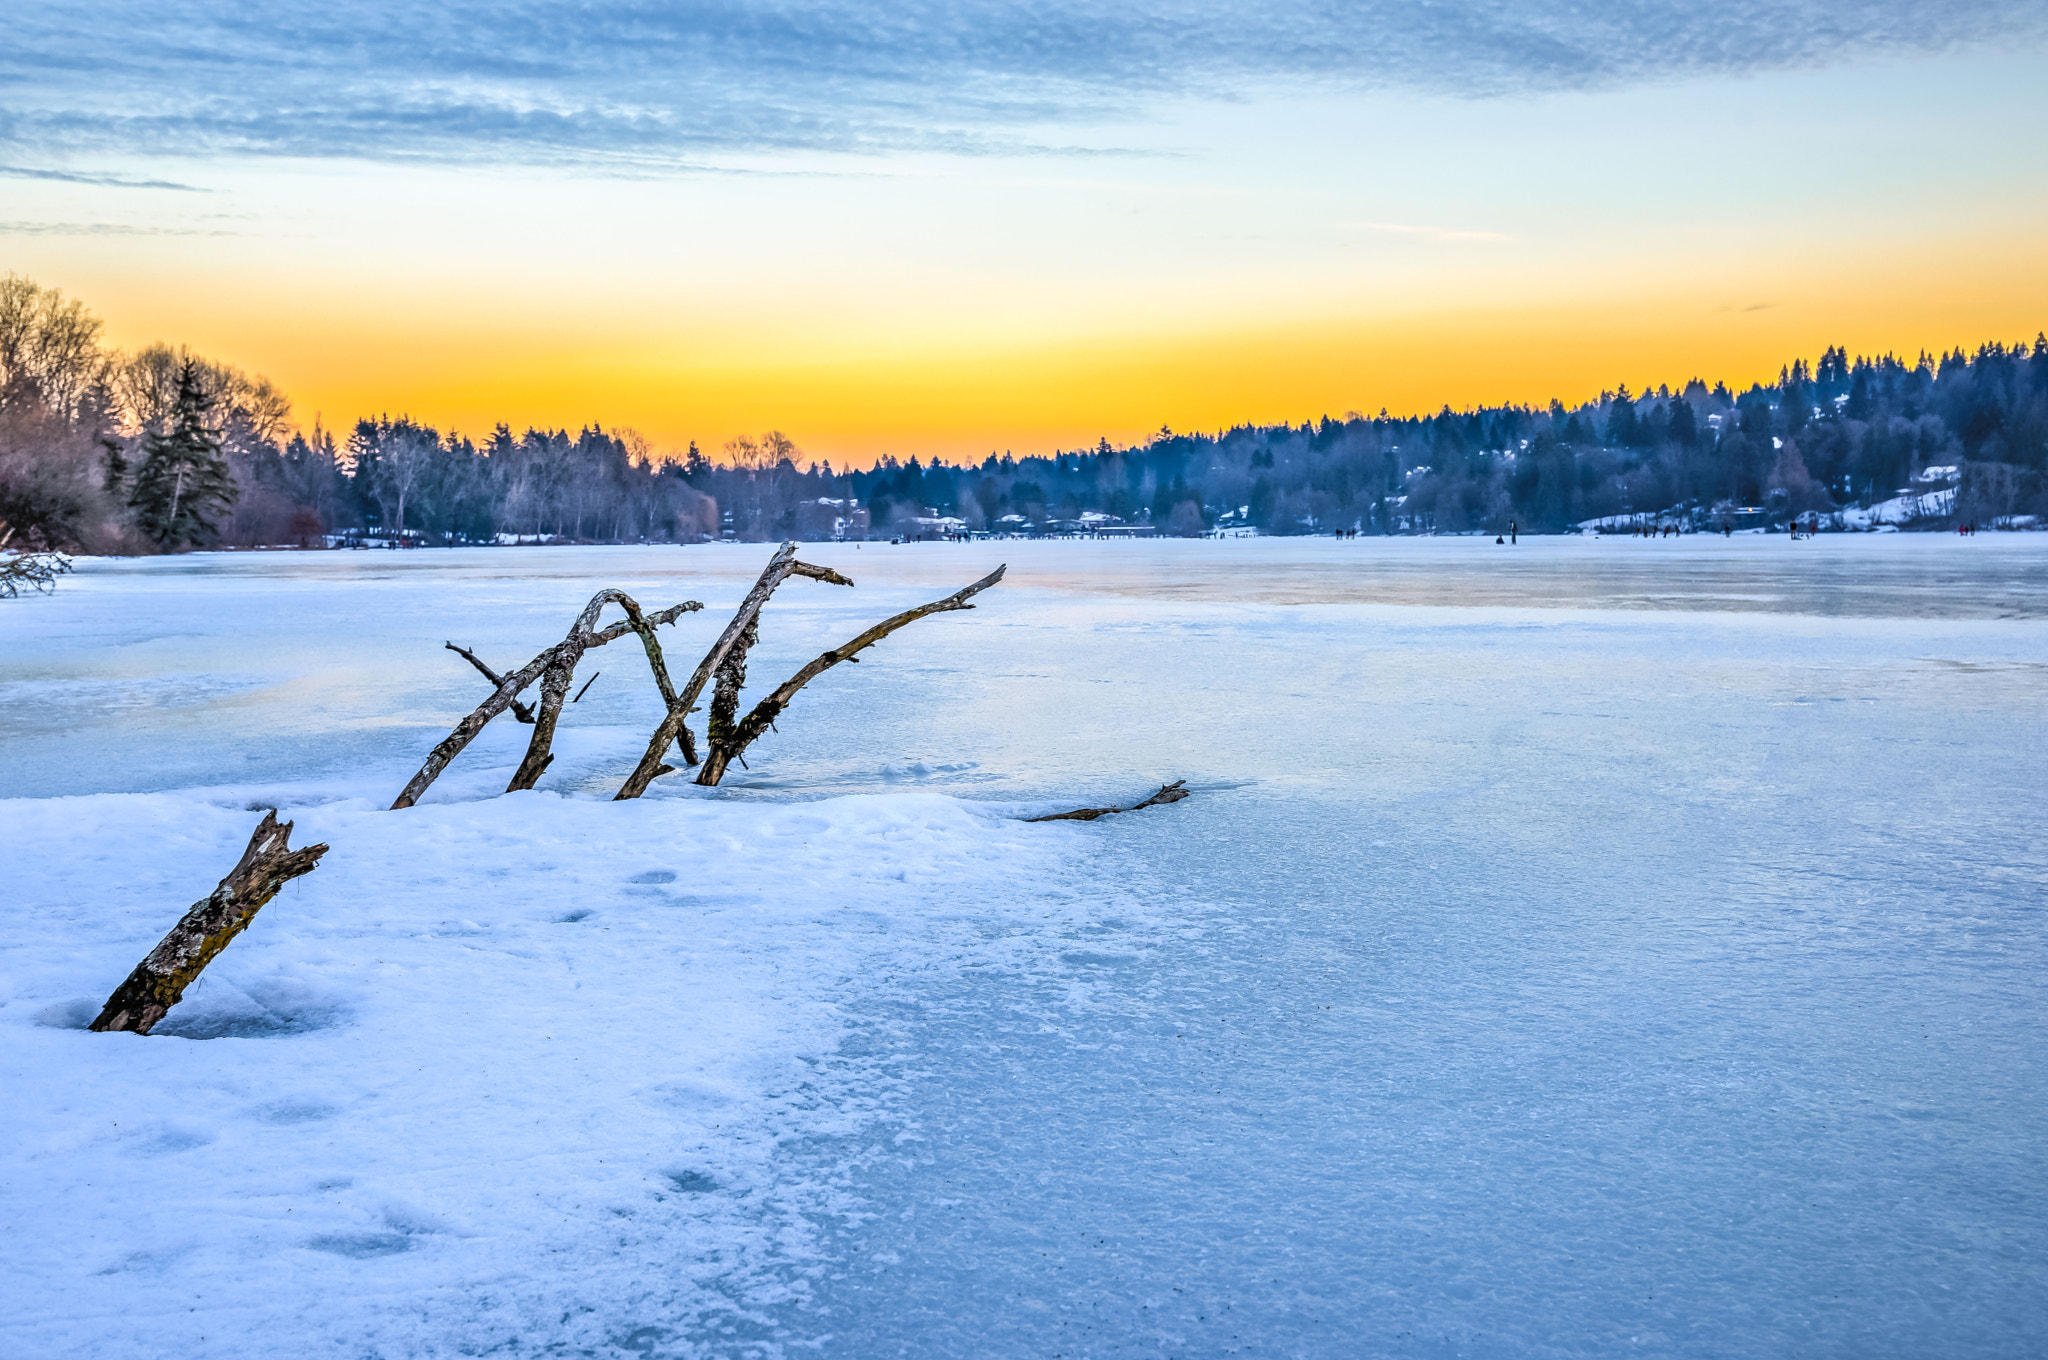 Nikon D810 + Nikon AF-S Nikkor 18-35mm F3.5-4.5G ED sample photo. Sunset on frozen deer lake photography